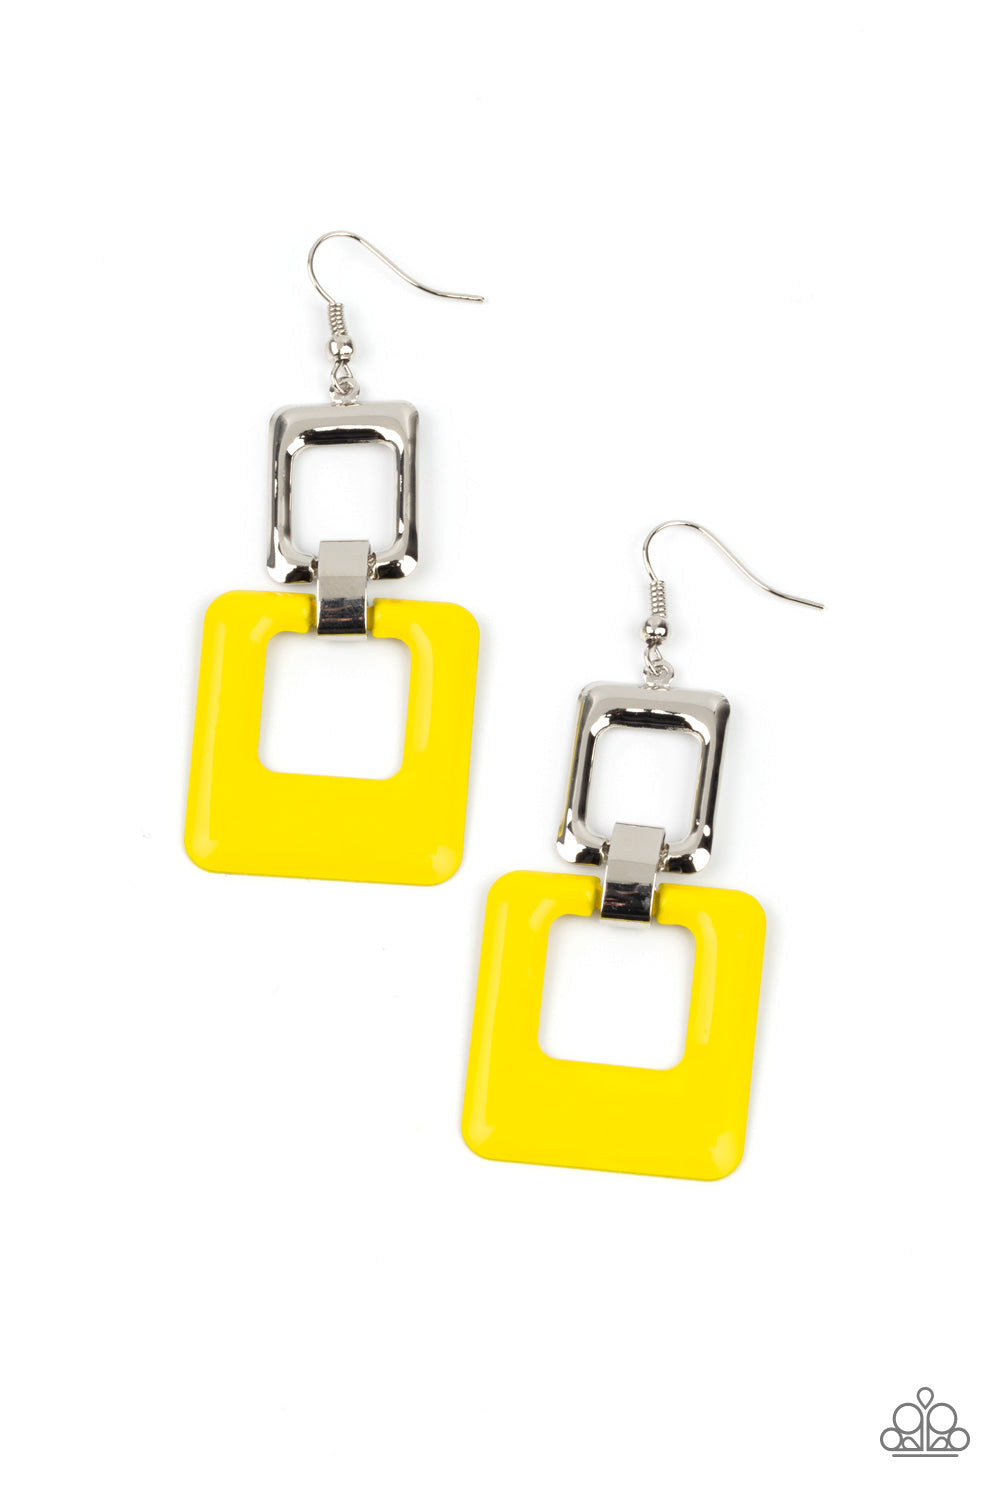 Twice As Nice Yellow
Earrings - Daria's Blings N Things